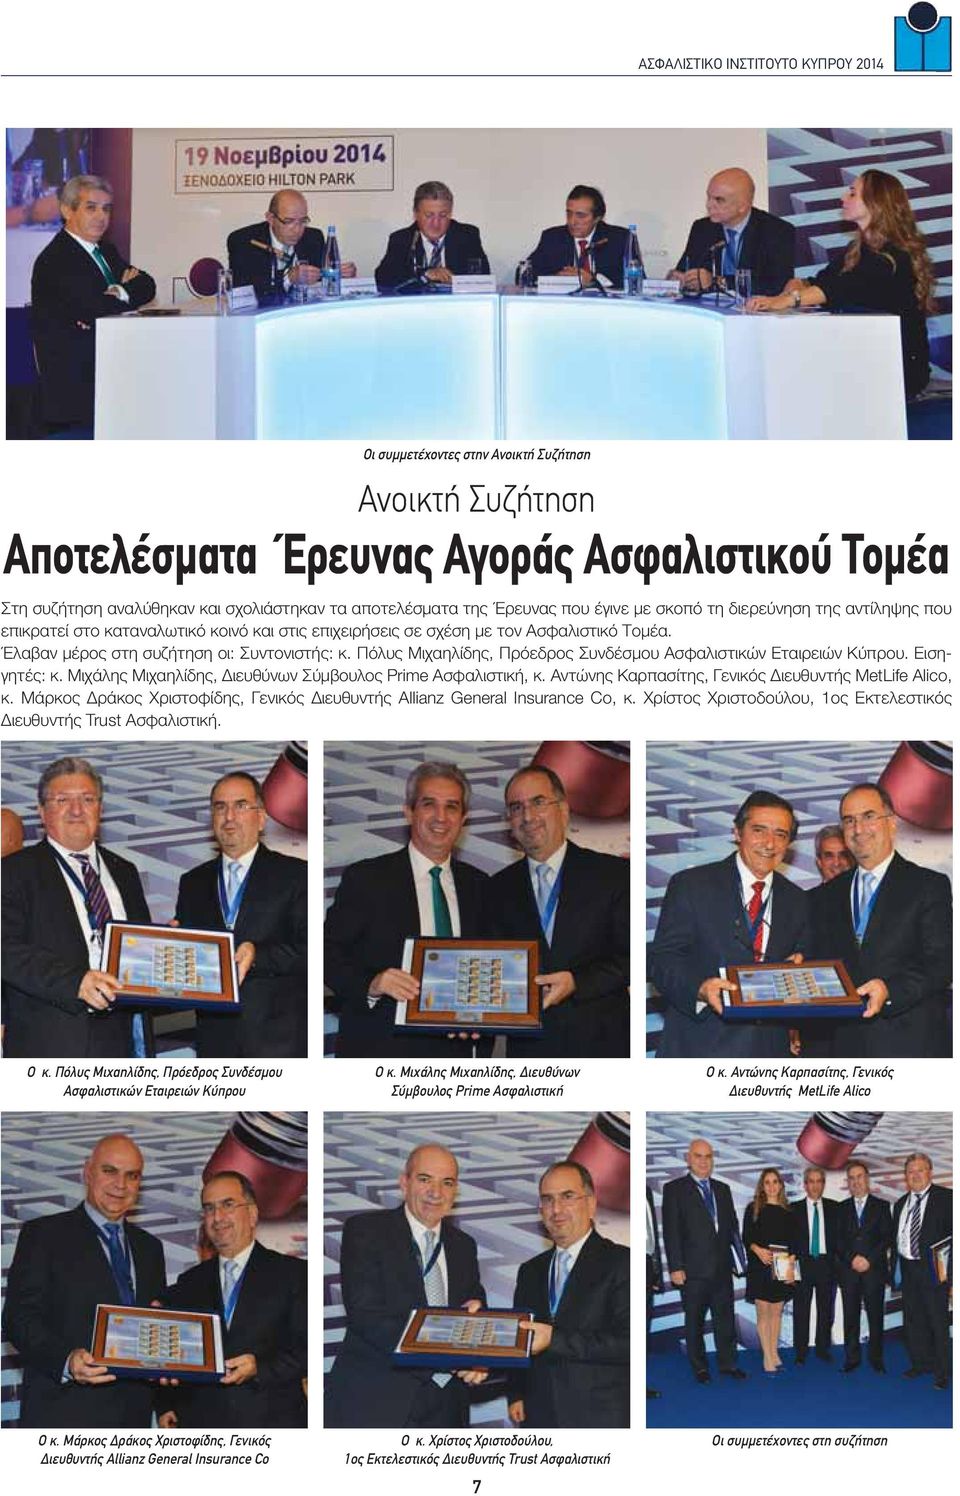 Πόλυς Μιχαηλίδης, Πρόεδρος Συνδέσμου Ασφαλιστικών Εταιρειών Κύπρου. Εισηγητές: κ. Μιχάλης Μιχαηλίδης, Διευθύνων Σύμβουλος Prime Ασφαλιστική, κ. Αντώνης Καρπασίτης, Γενικός Διευθυντής MetLife Alico, κ.